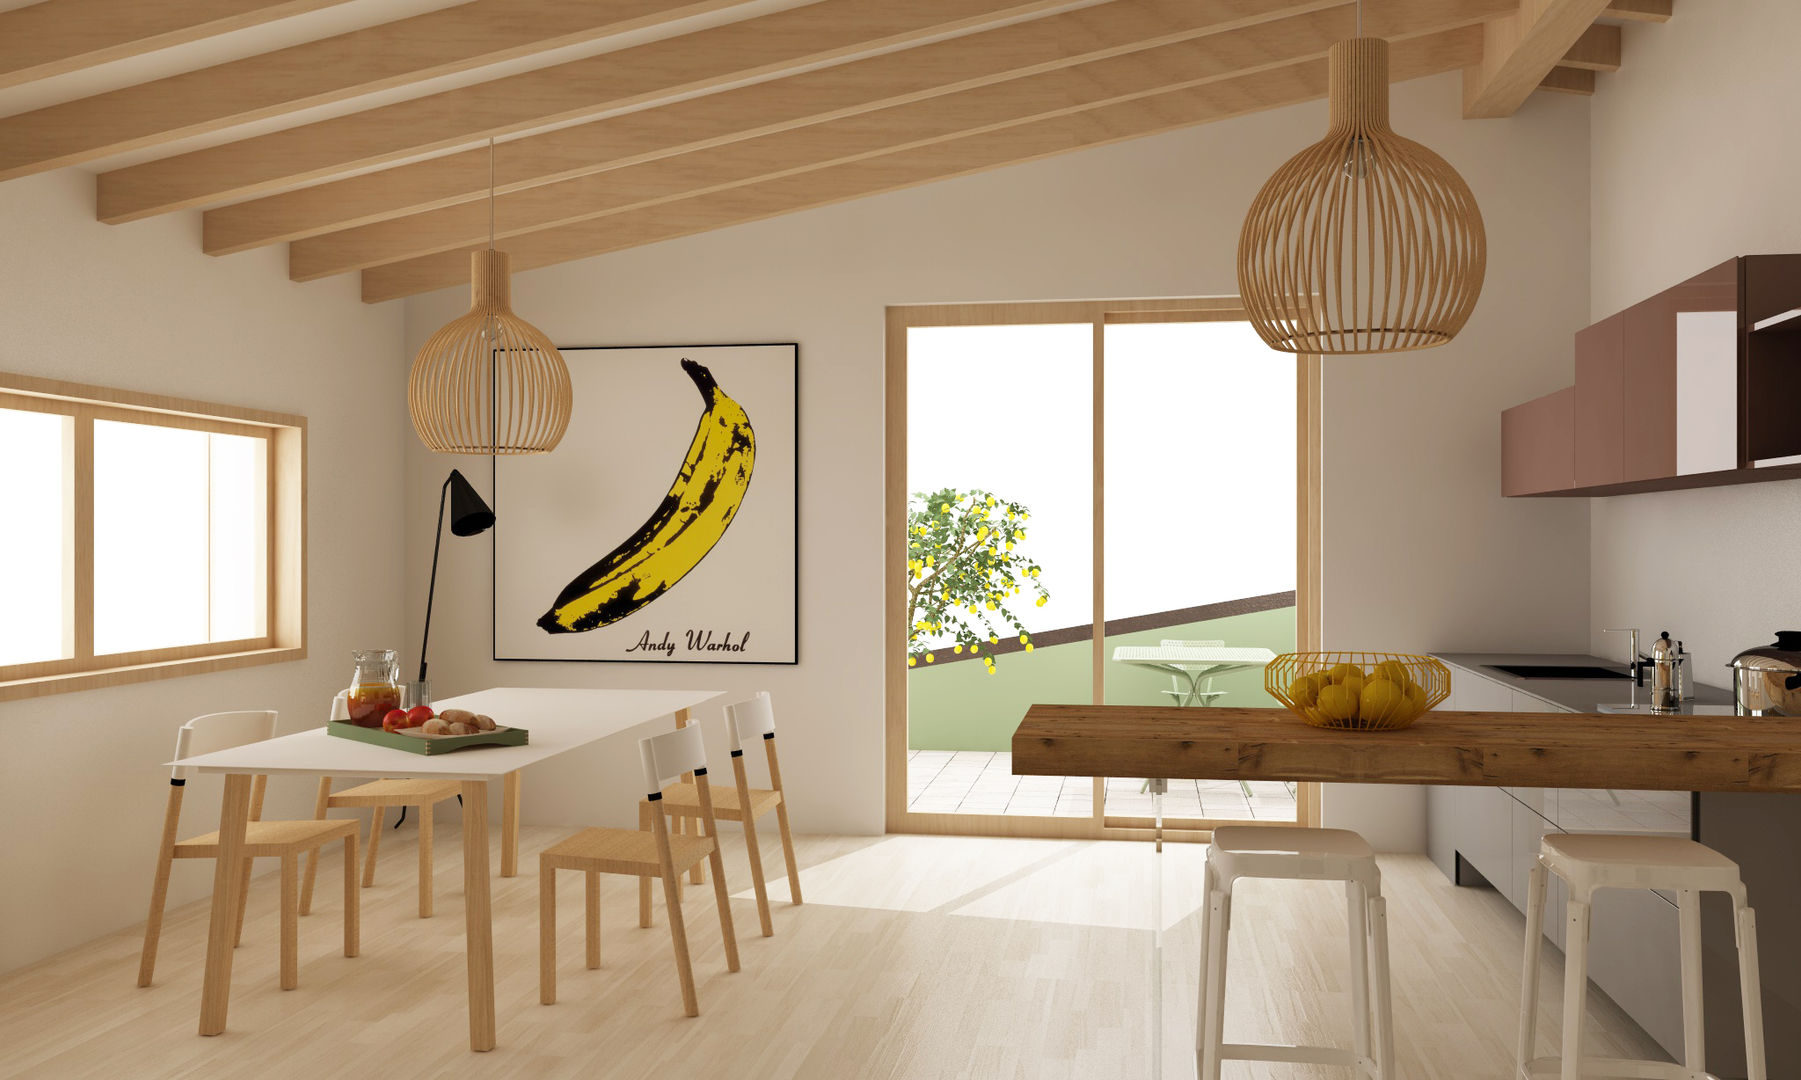 Progetto interno appartamento, Studio Cobelli Studio Cobelli Modern style kitchen Tables & chairs